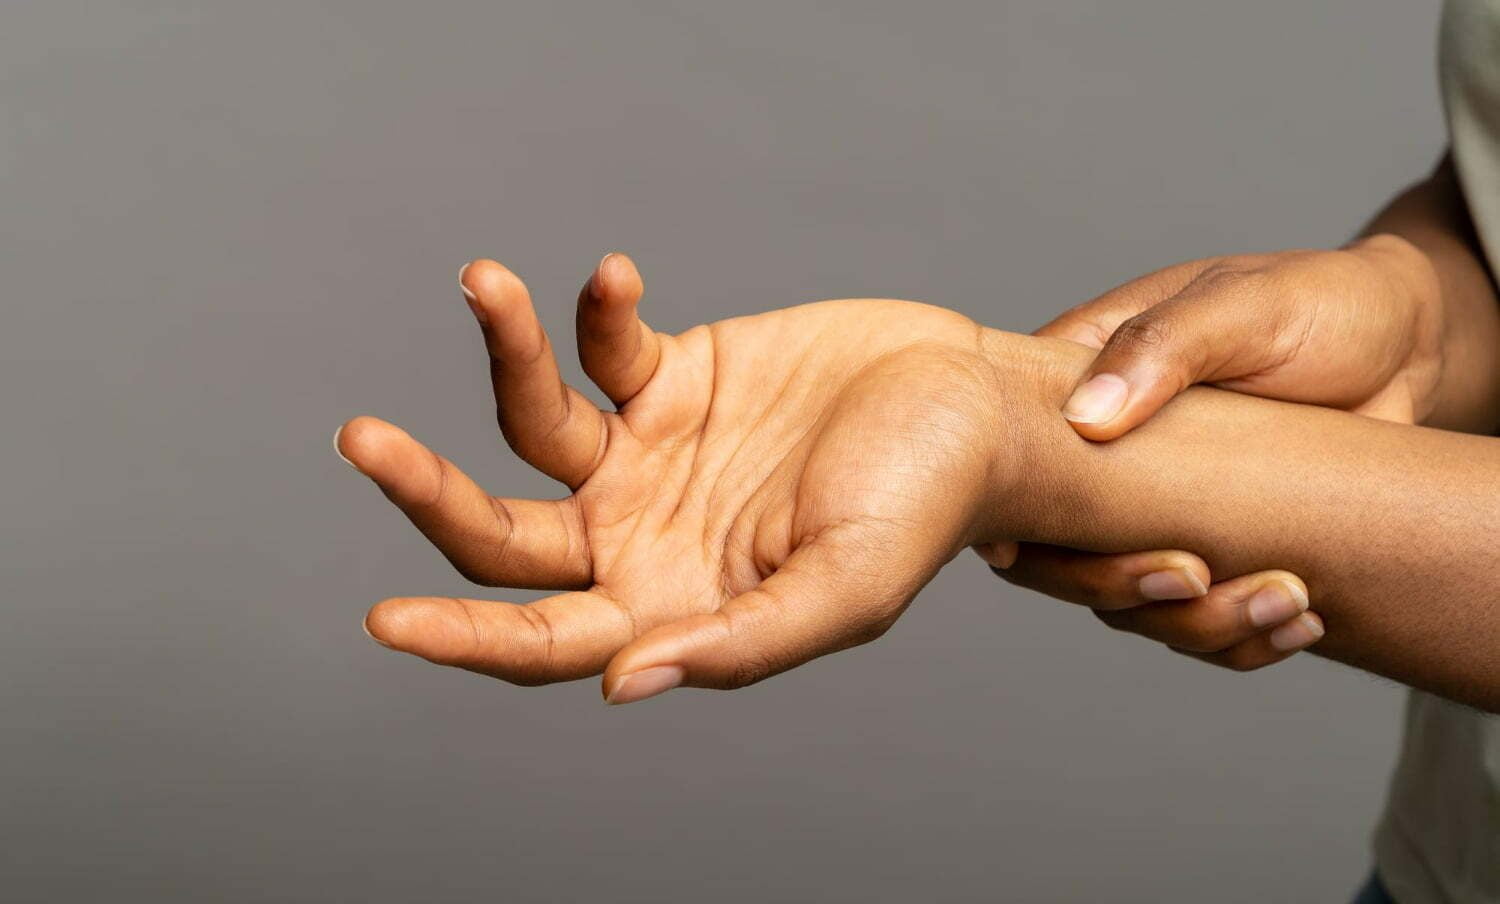 manos de persona, con hormigueo, síntoma del síndrome de raynaud